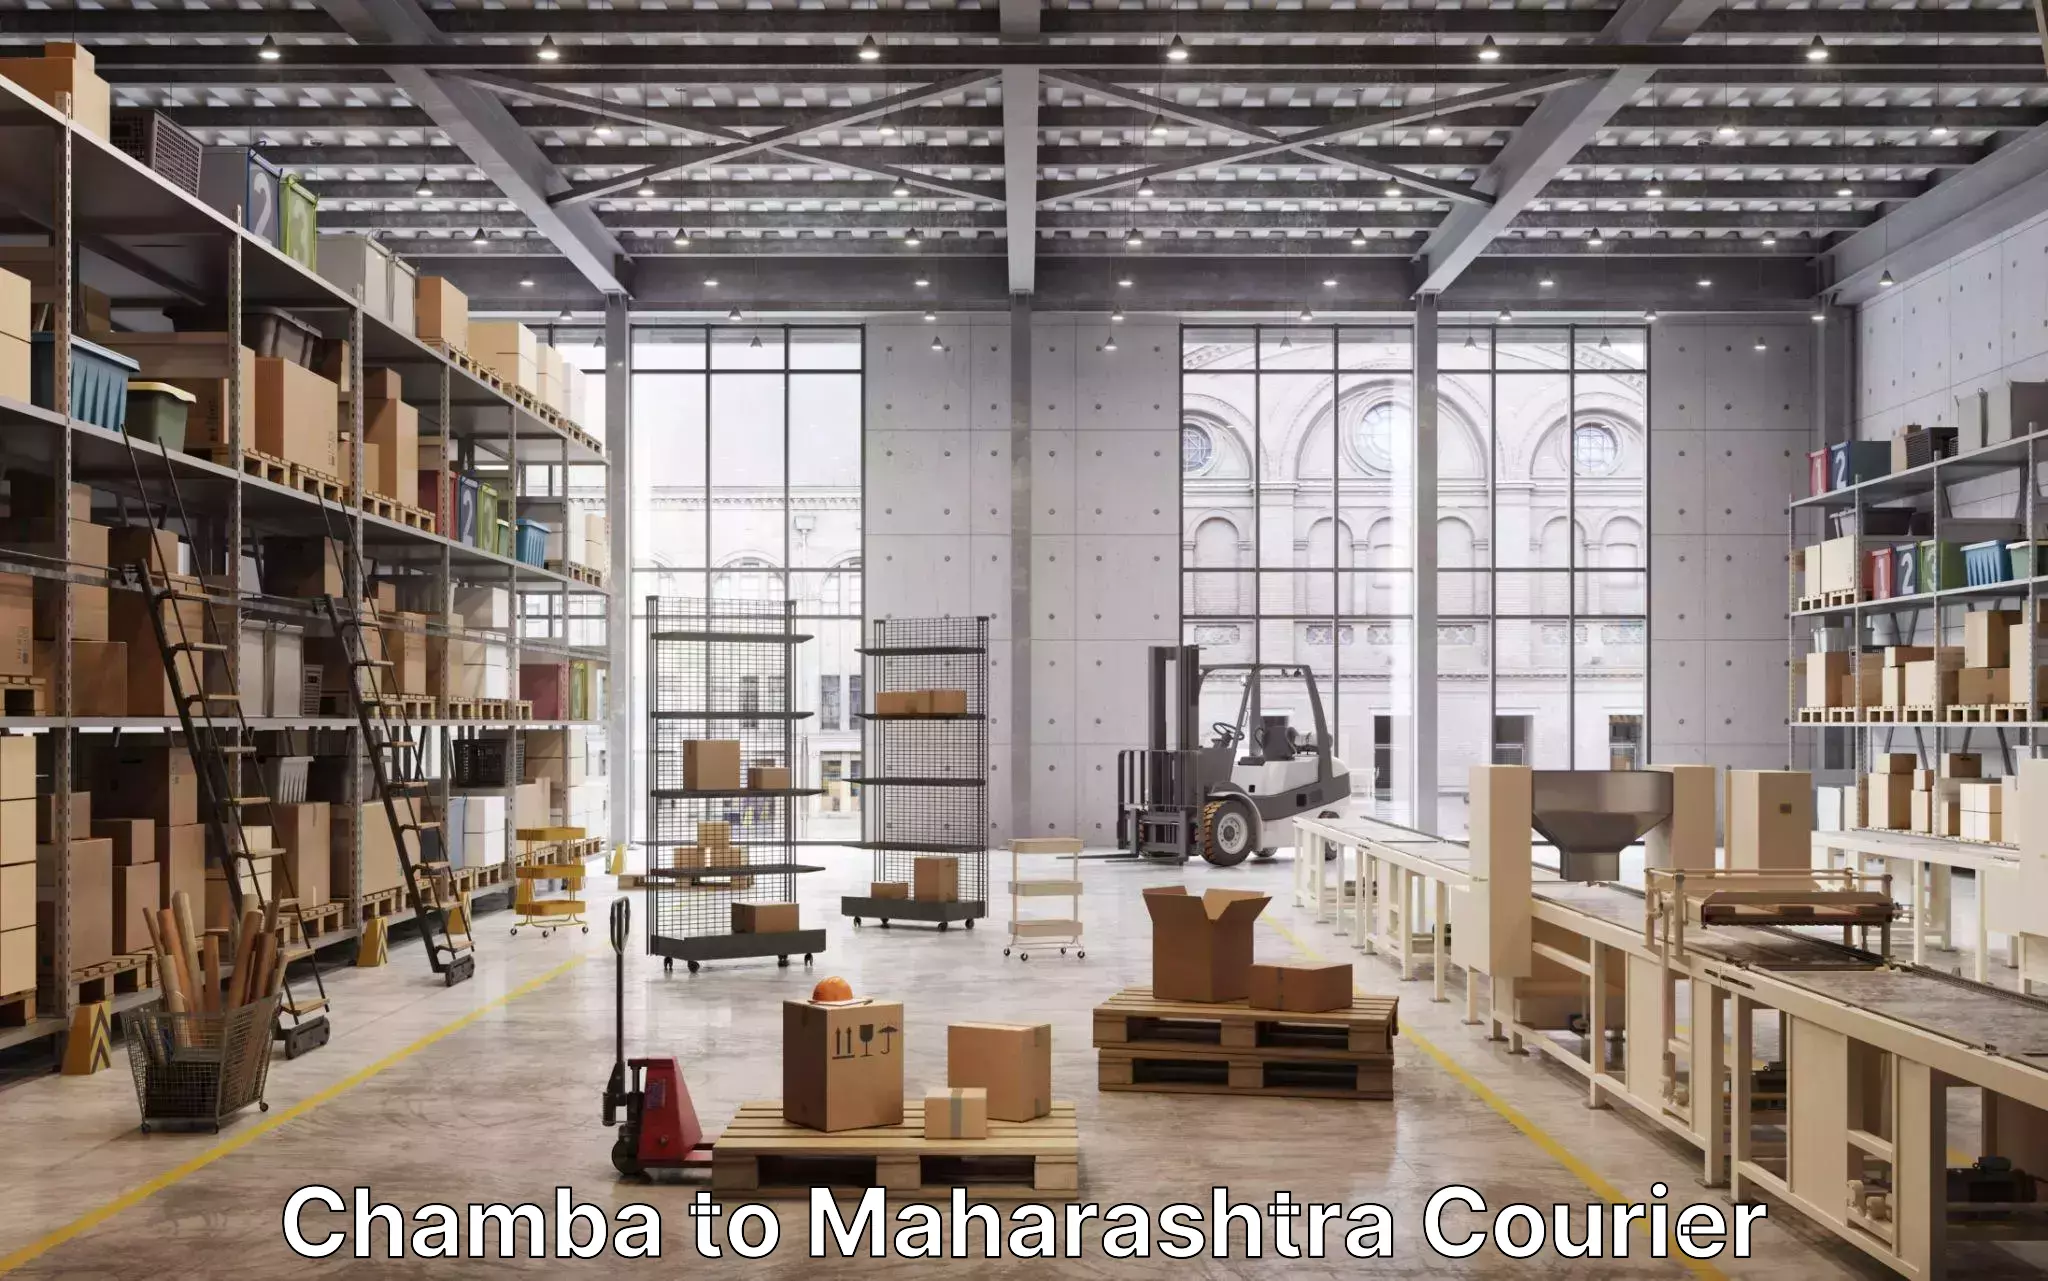 Home goods moving company Chamba to Maharashtra